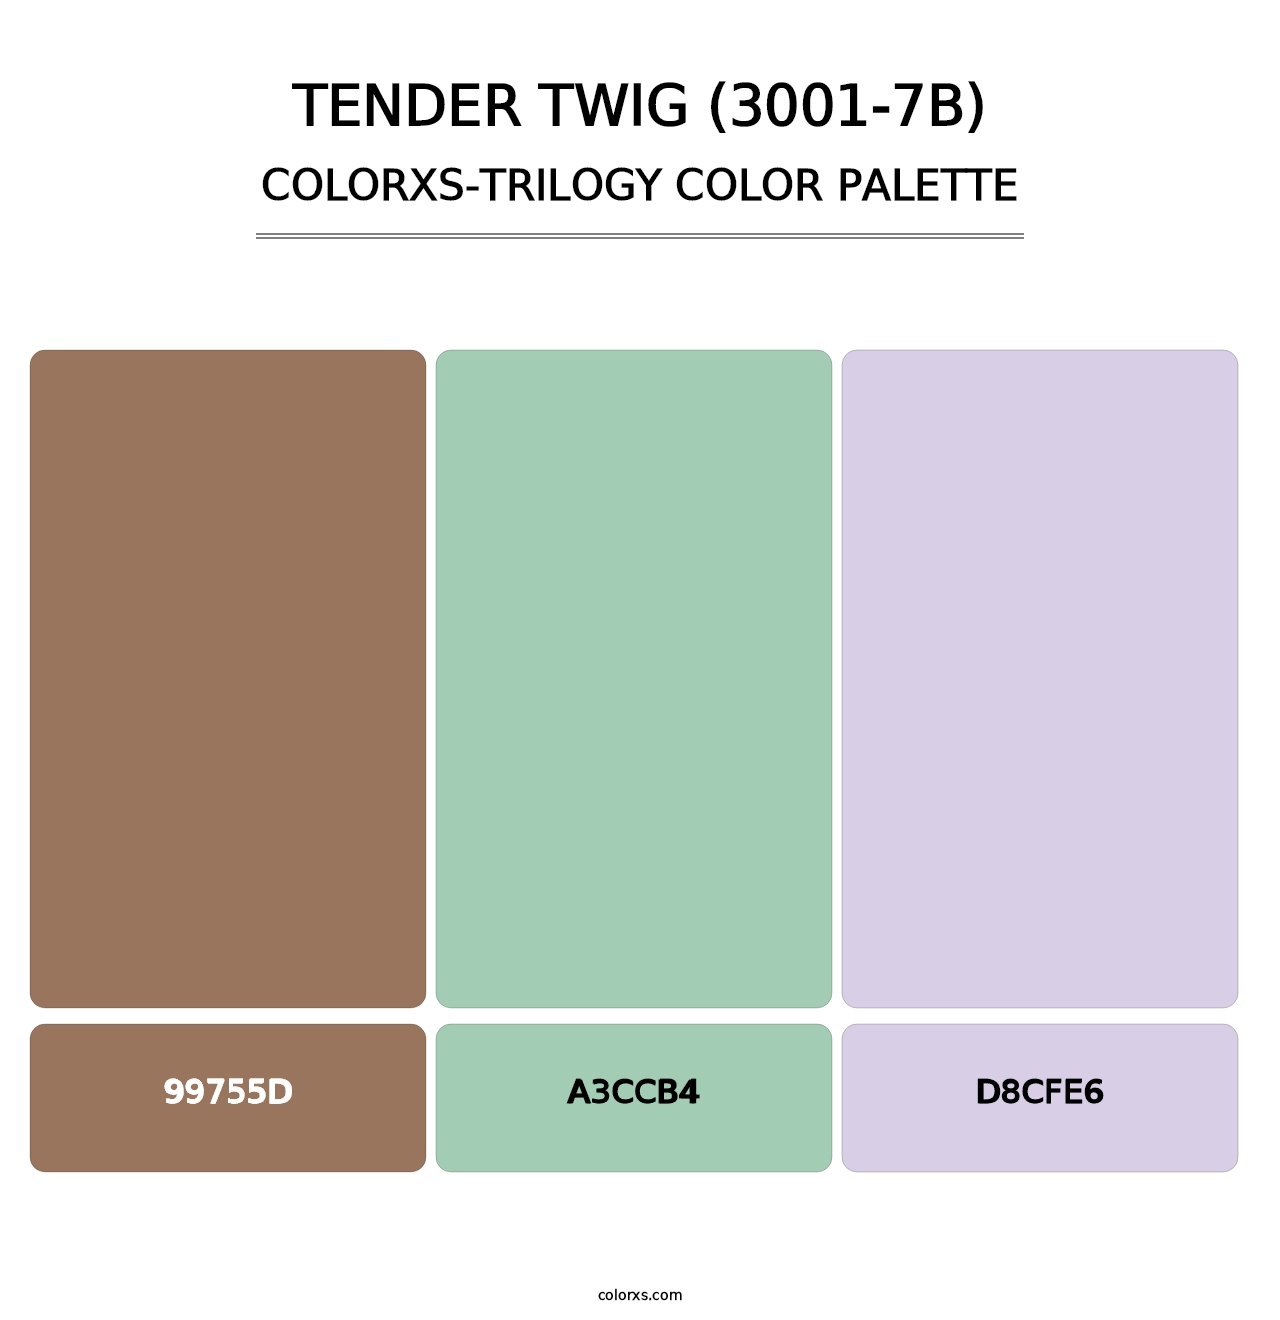 Tender Twig (3001-7B) - Colorxs Trilogy Palette